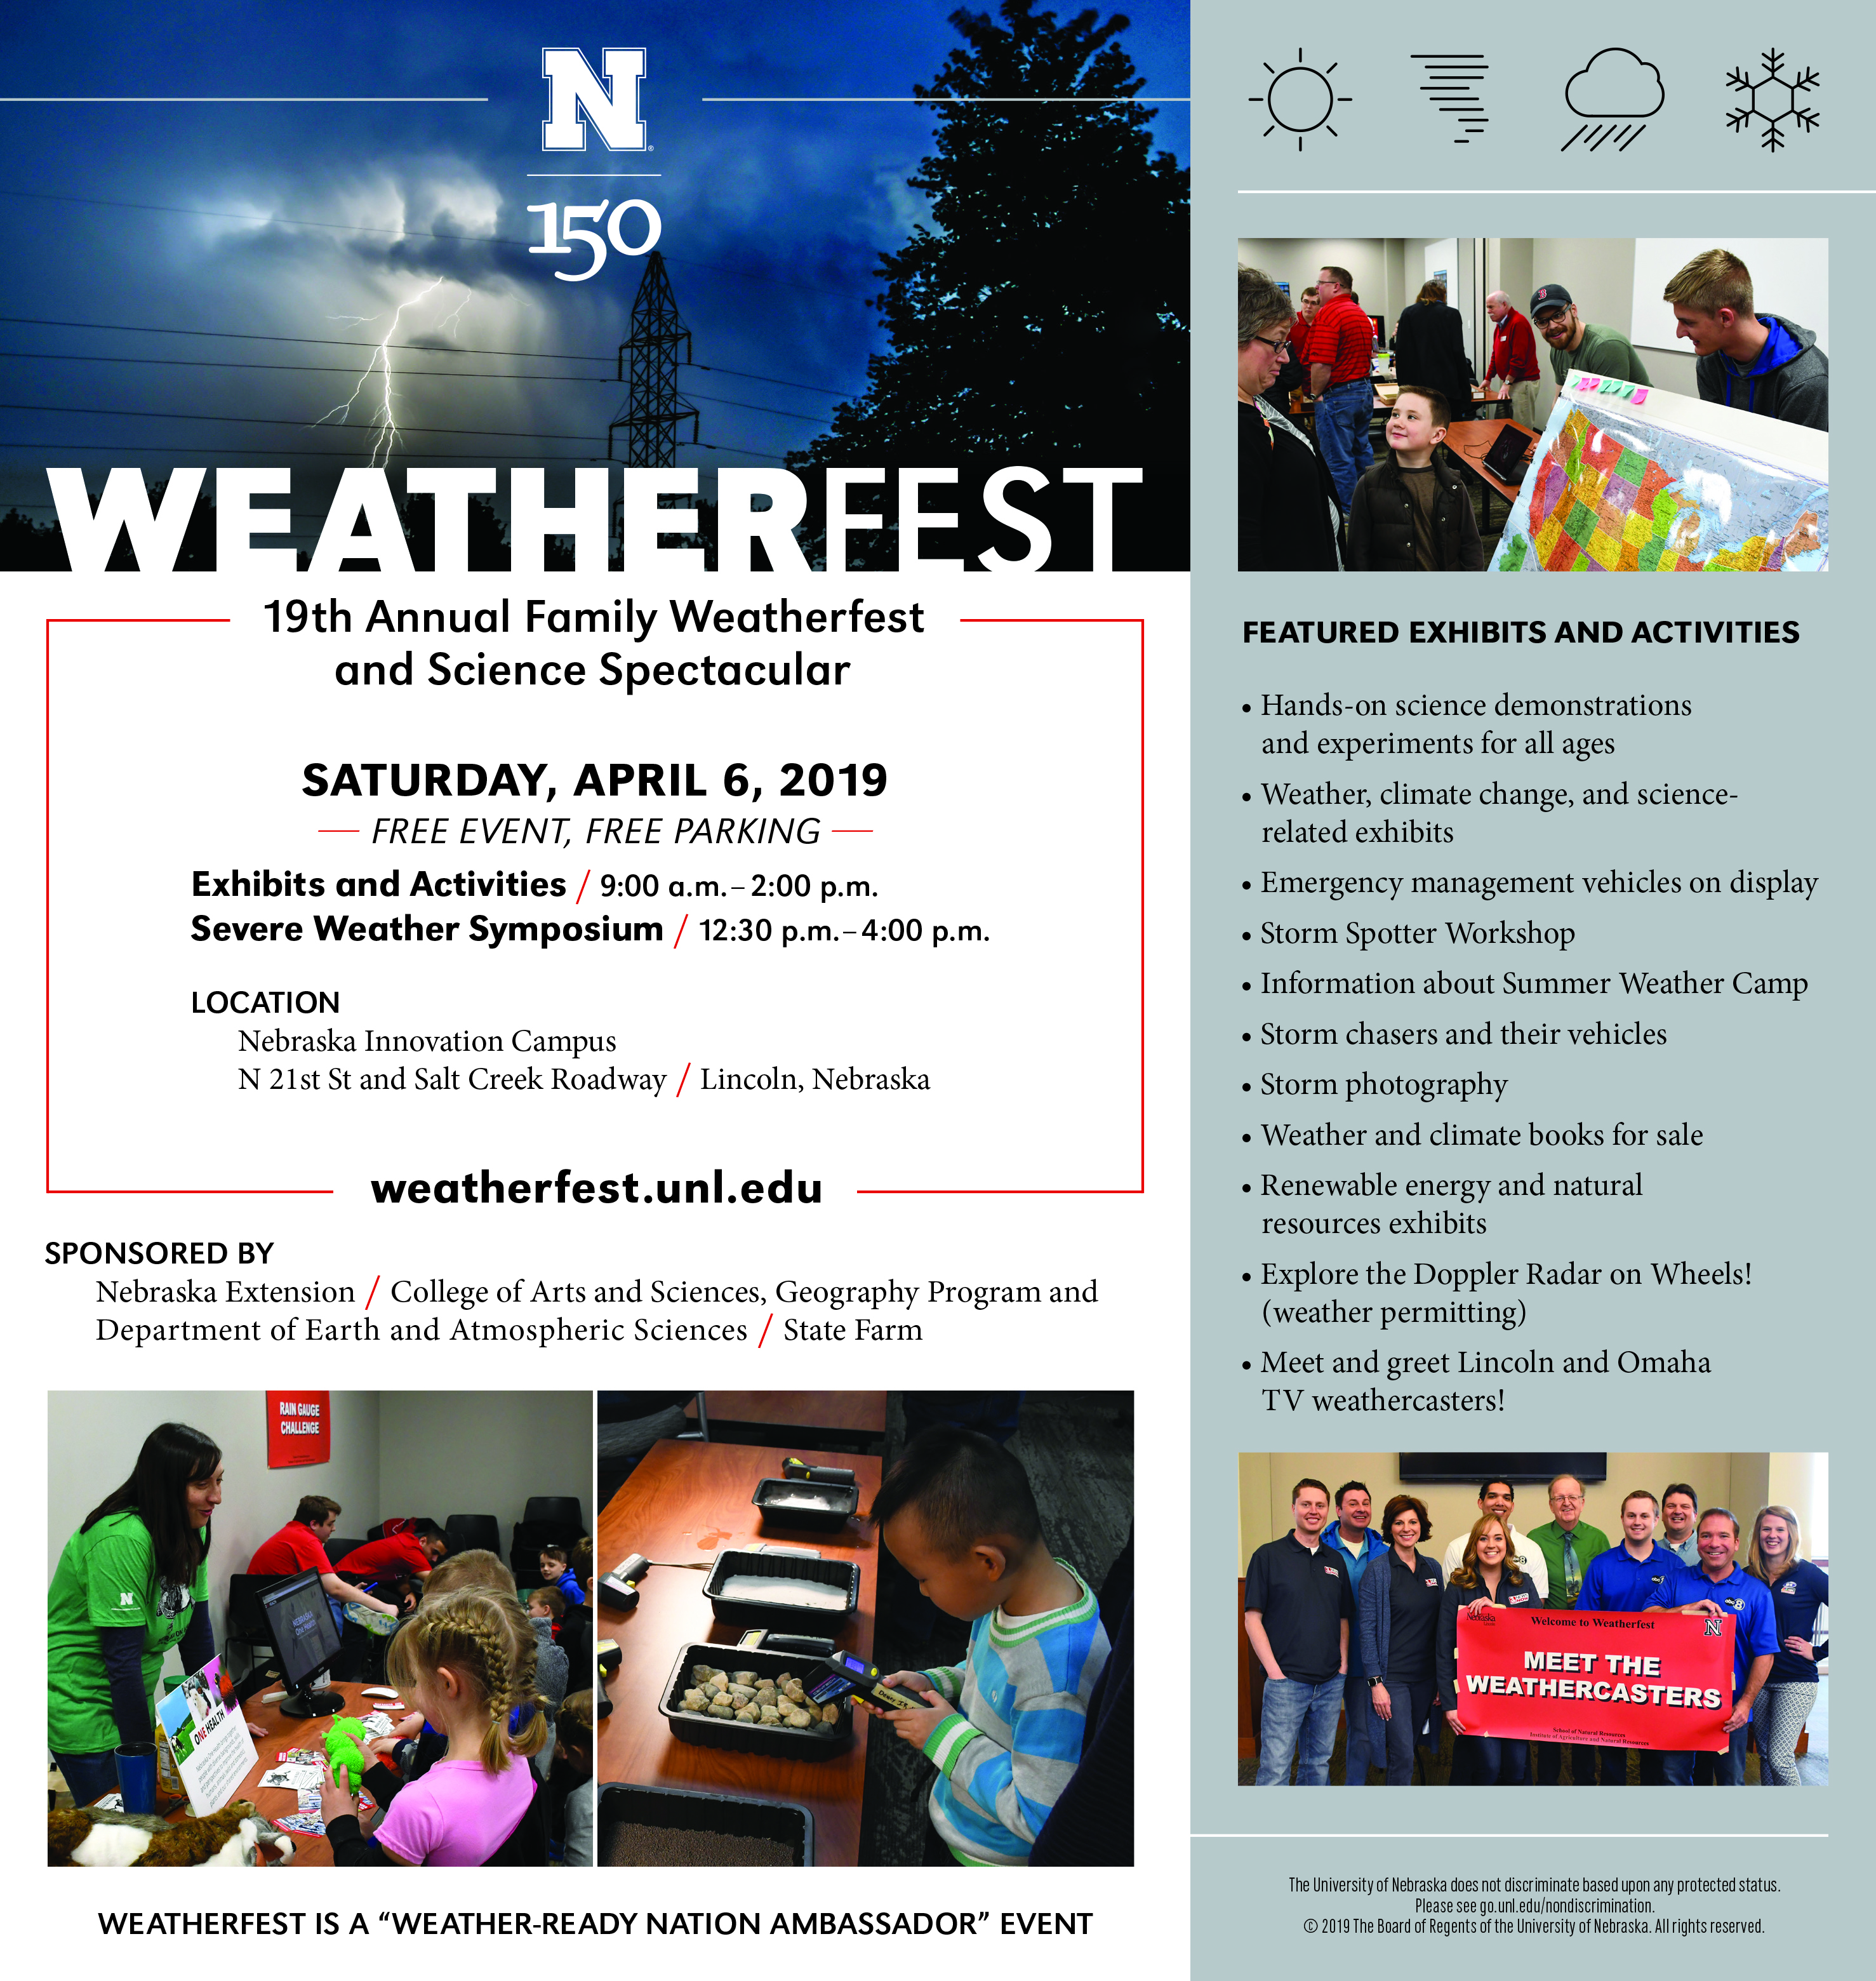 Weatherfest is set for April 6, 2019, at Nebraska Innovation Campus. 